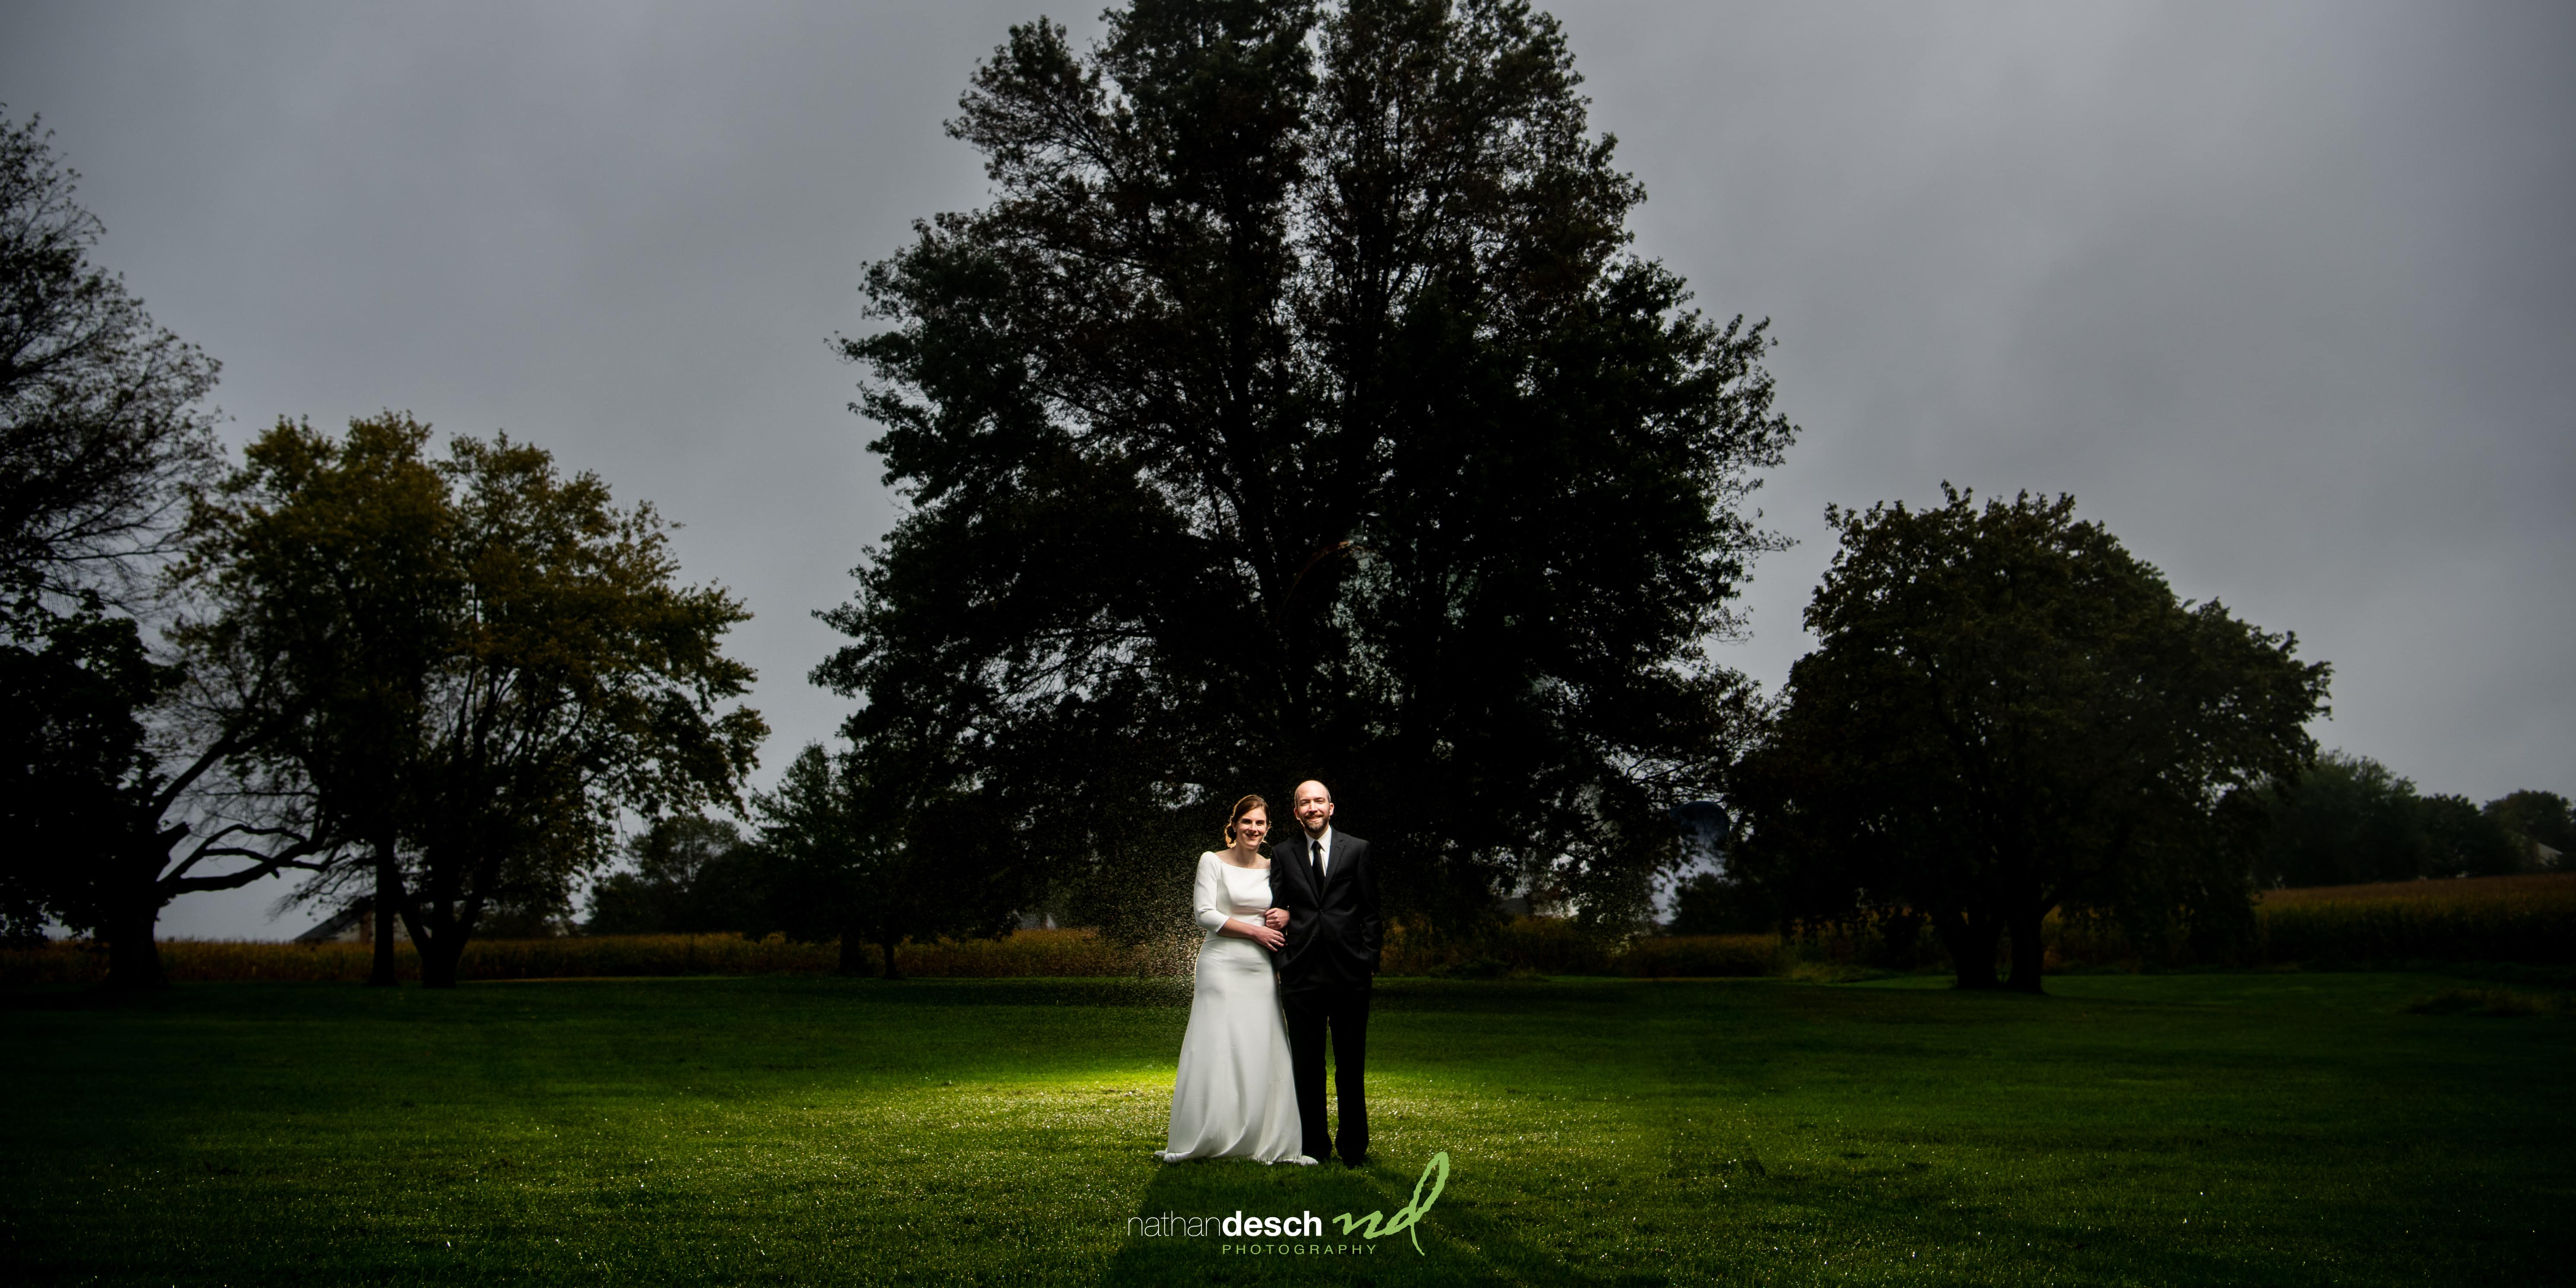 Rainy portrait of bride and groom